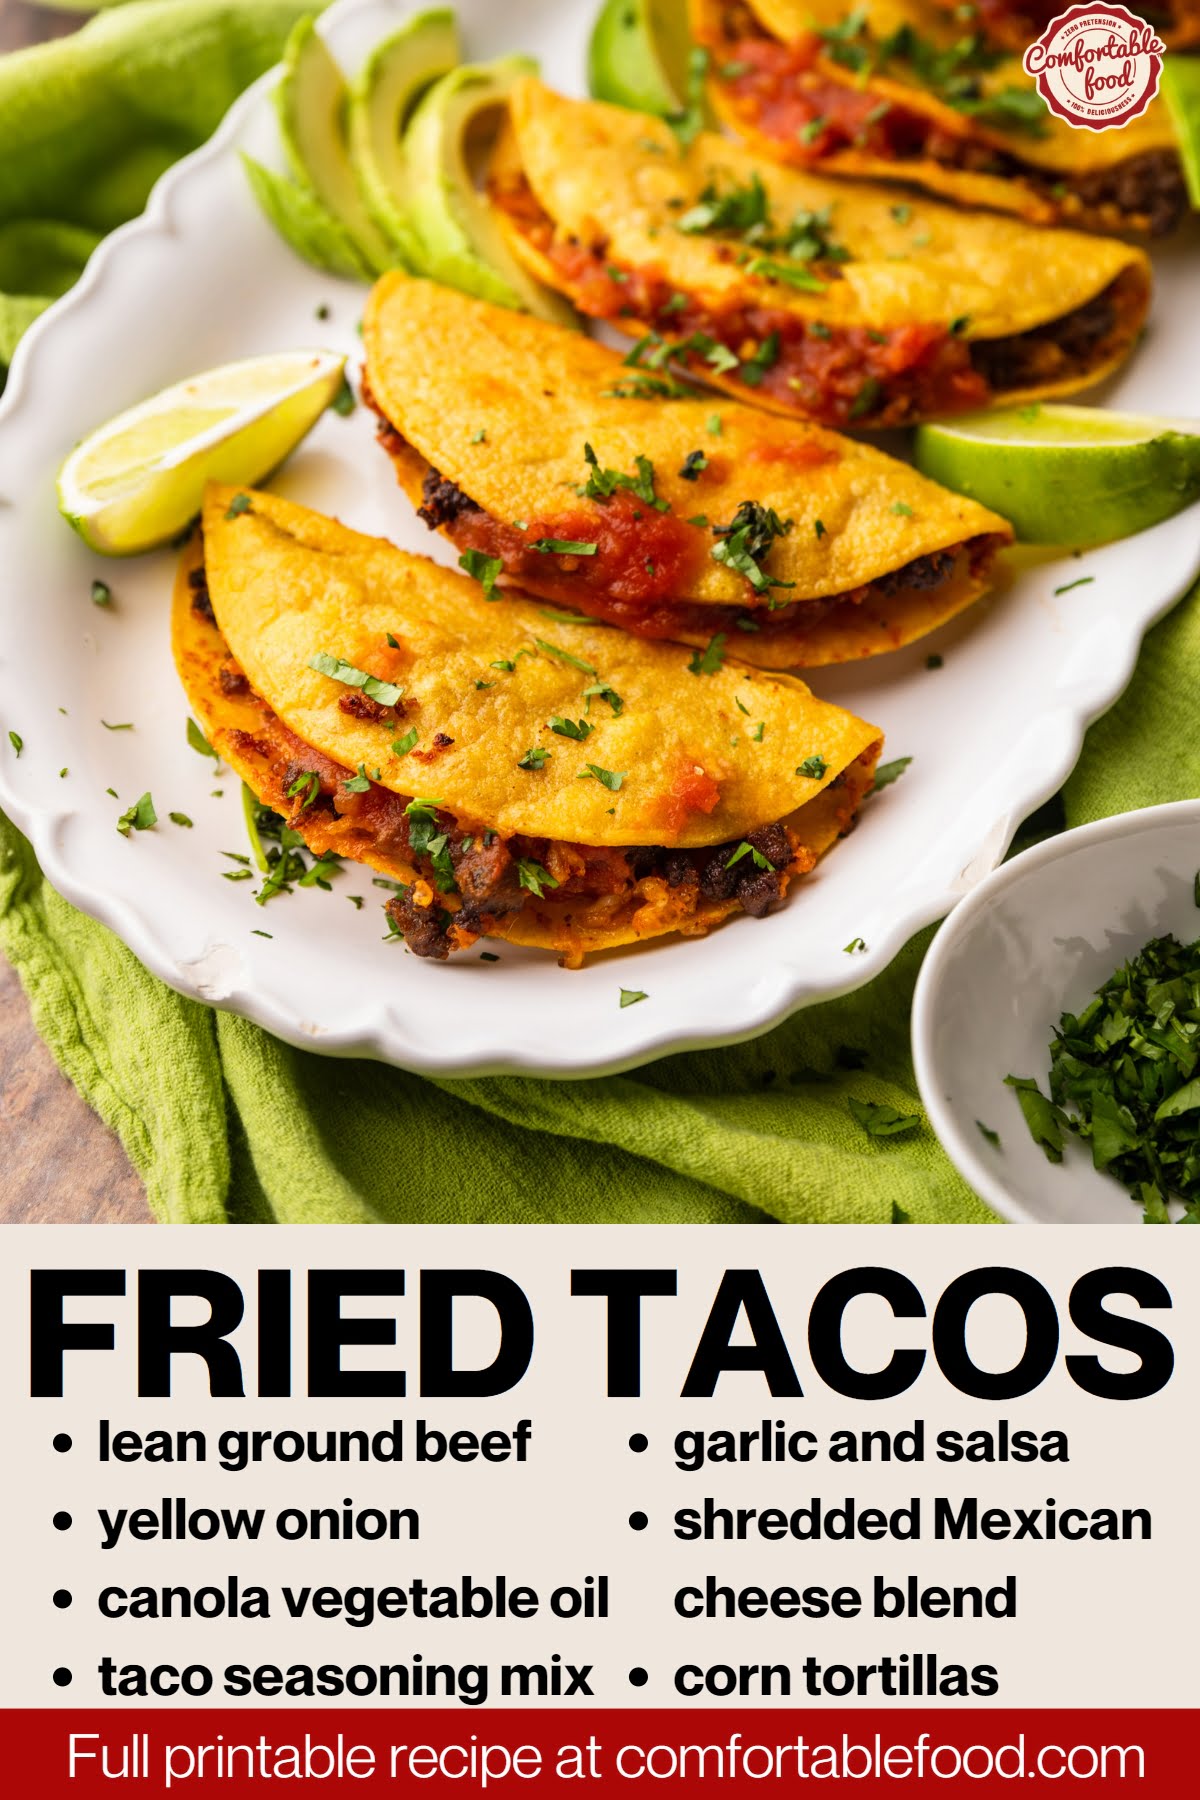 Fried tacos socials